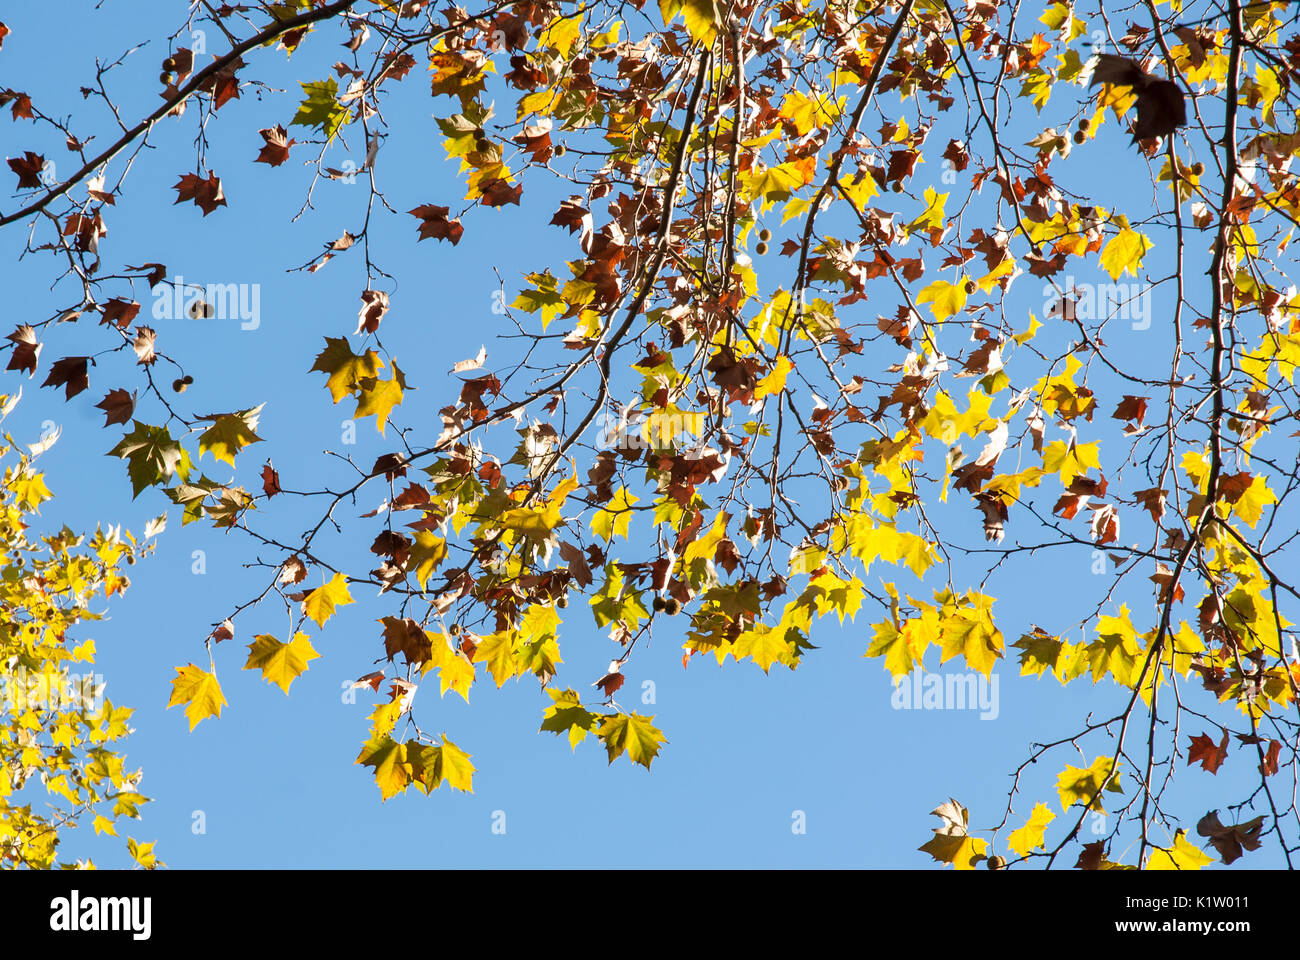 Amarillo otoño hojas de árbol de avión contra el cielo azul. Platanus acerifolia o Platanus hispanica Foto de stock